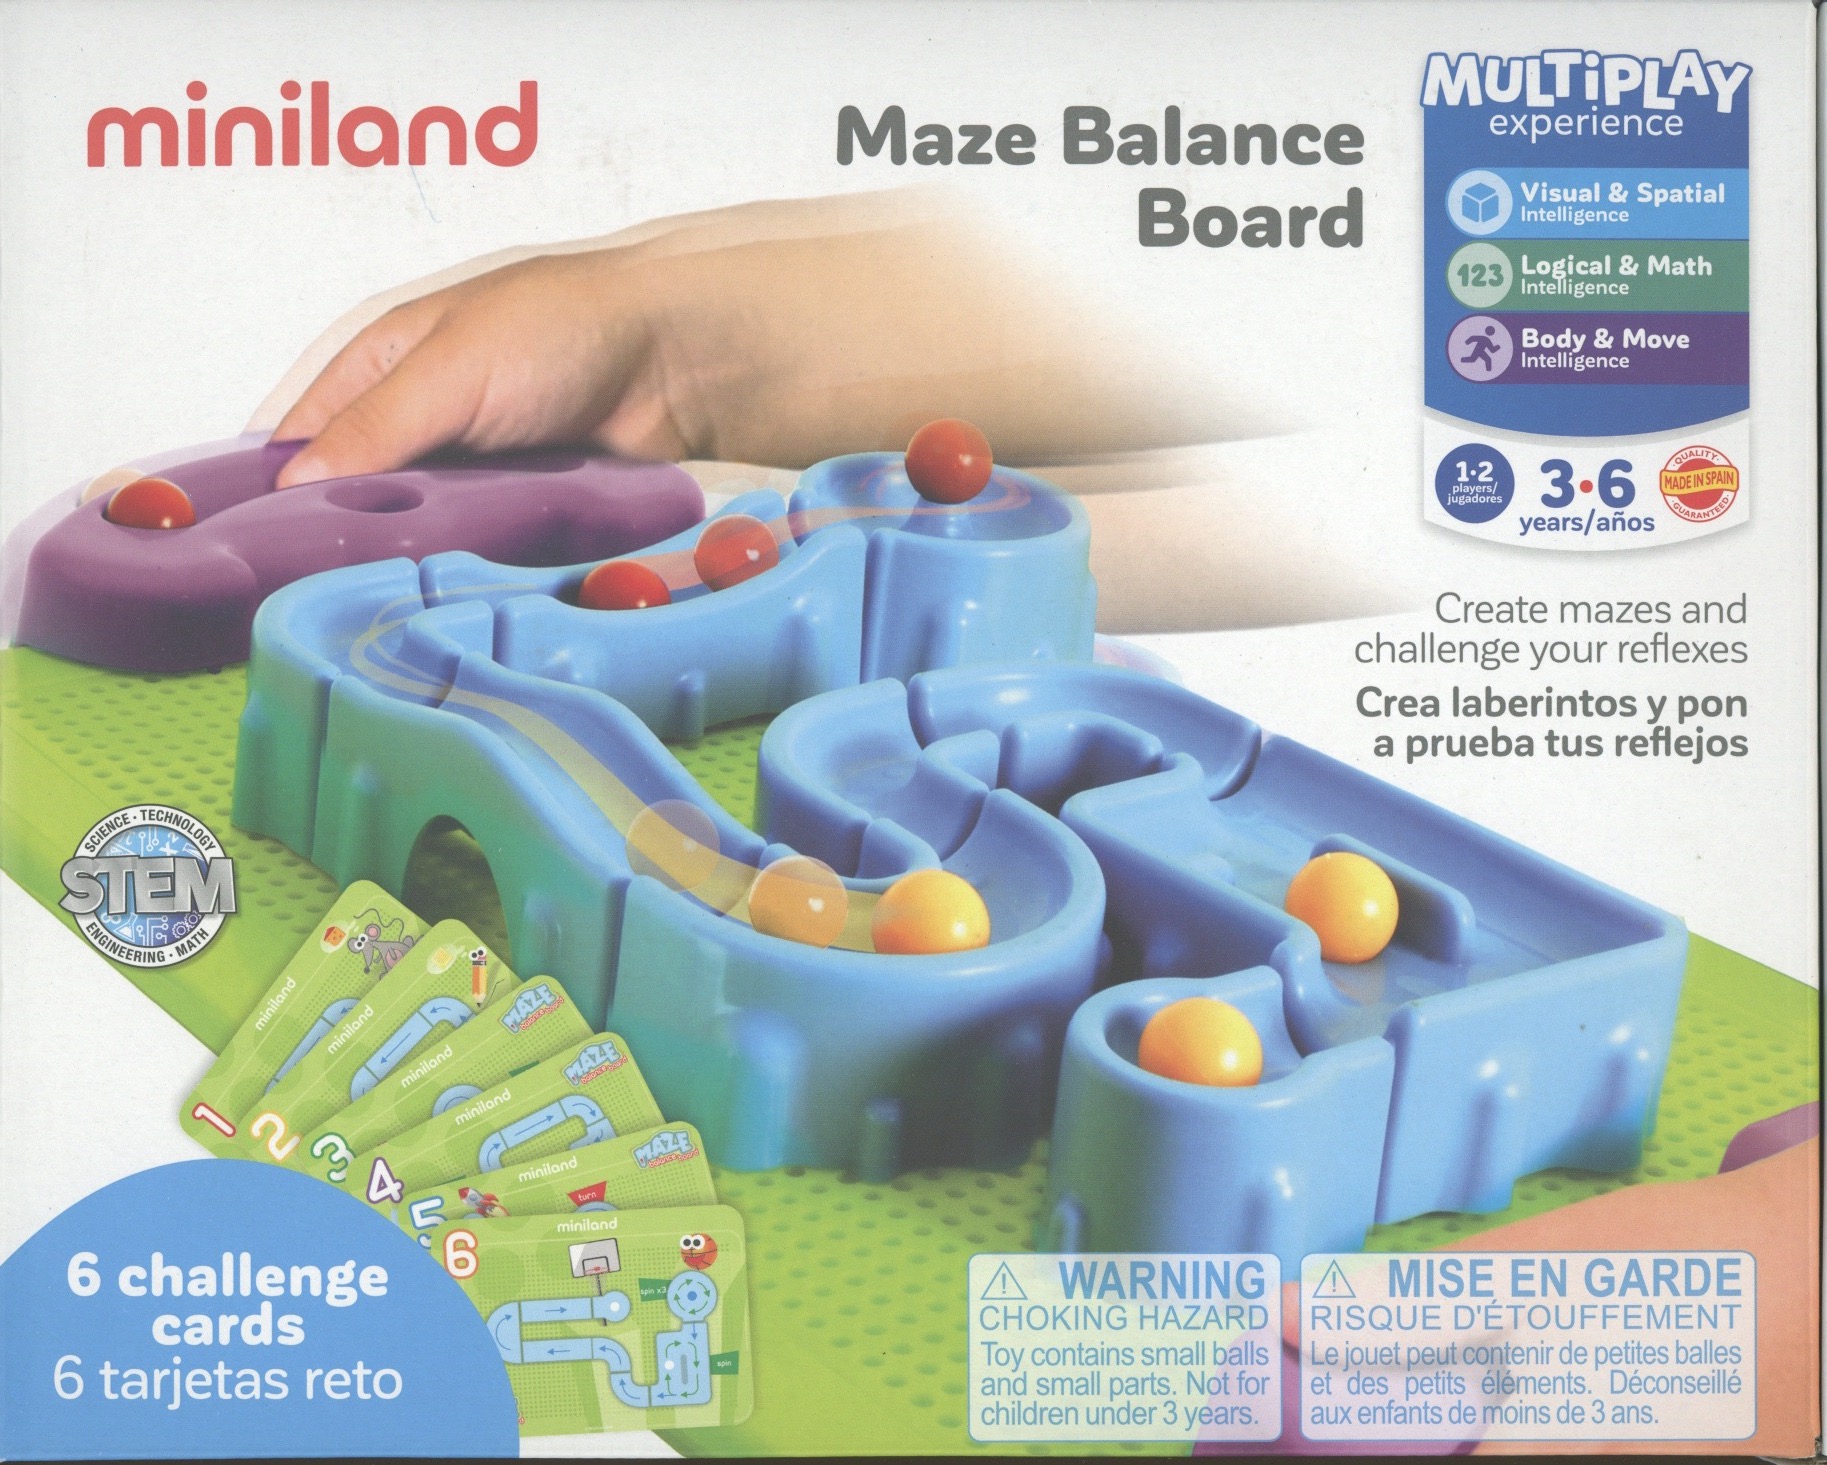 Maze Balance Board